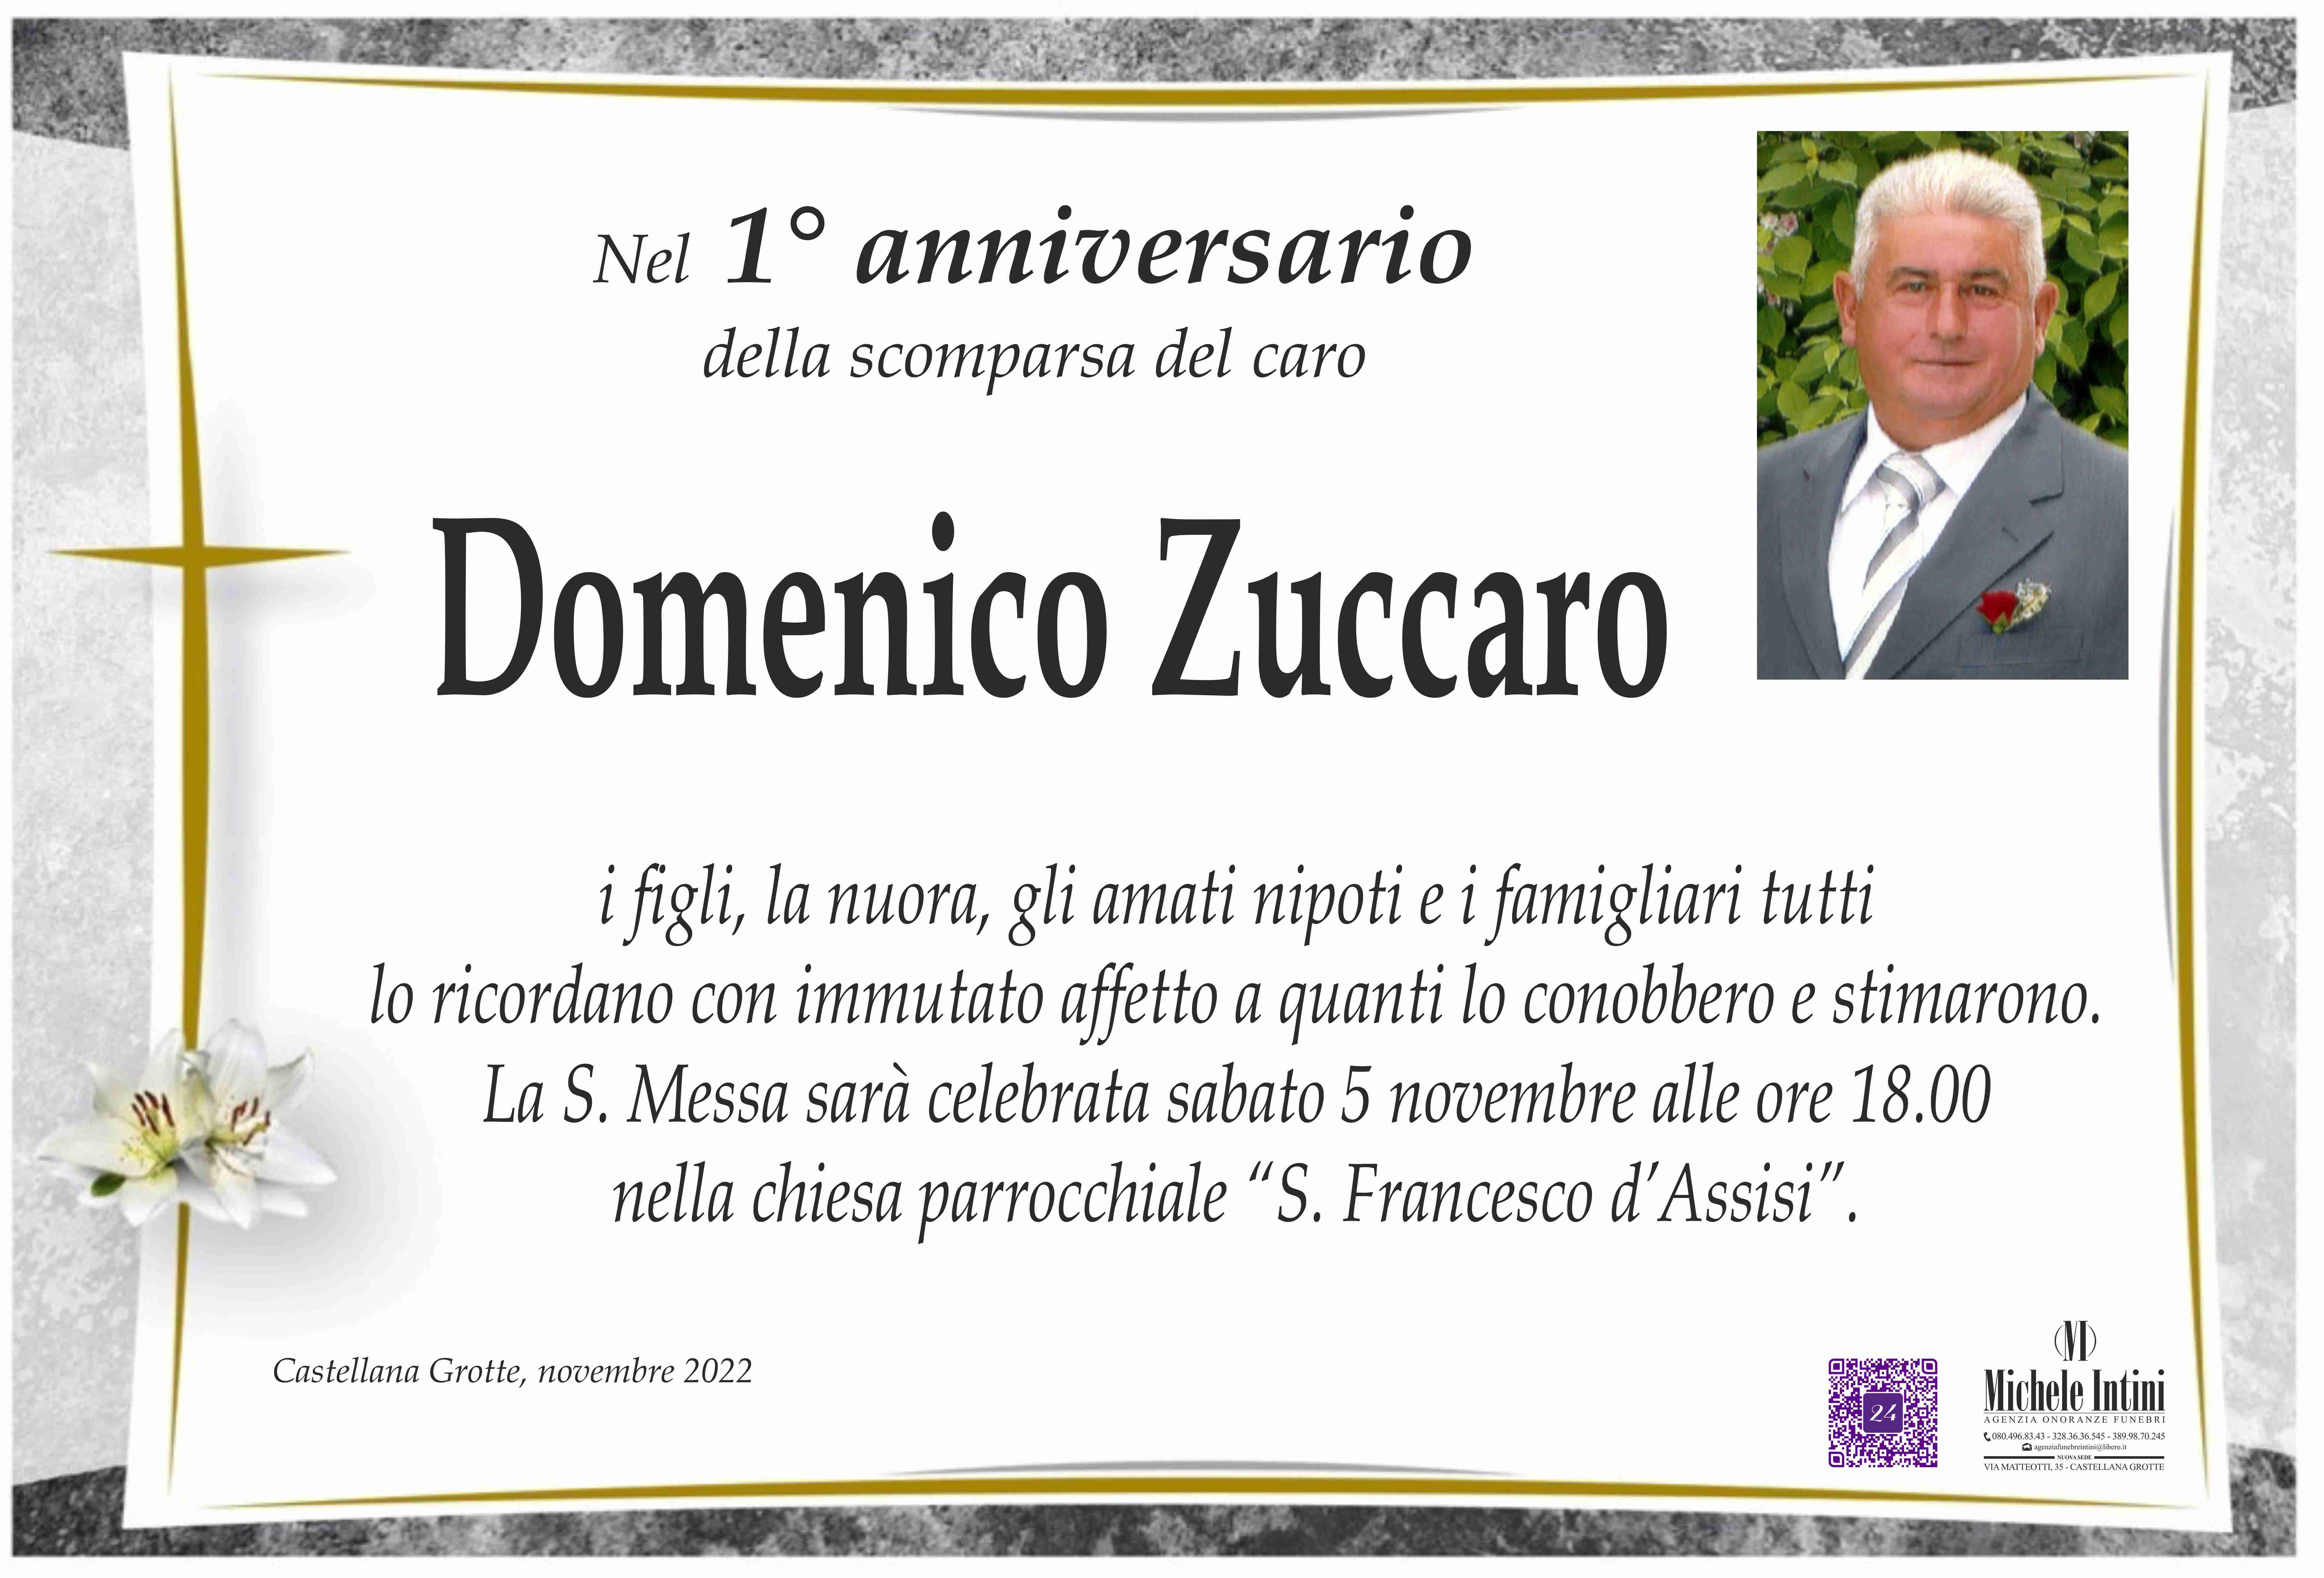 Domenico Zuccaro